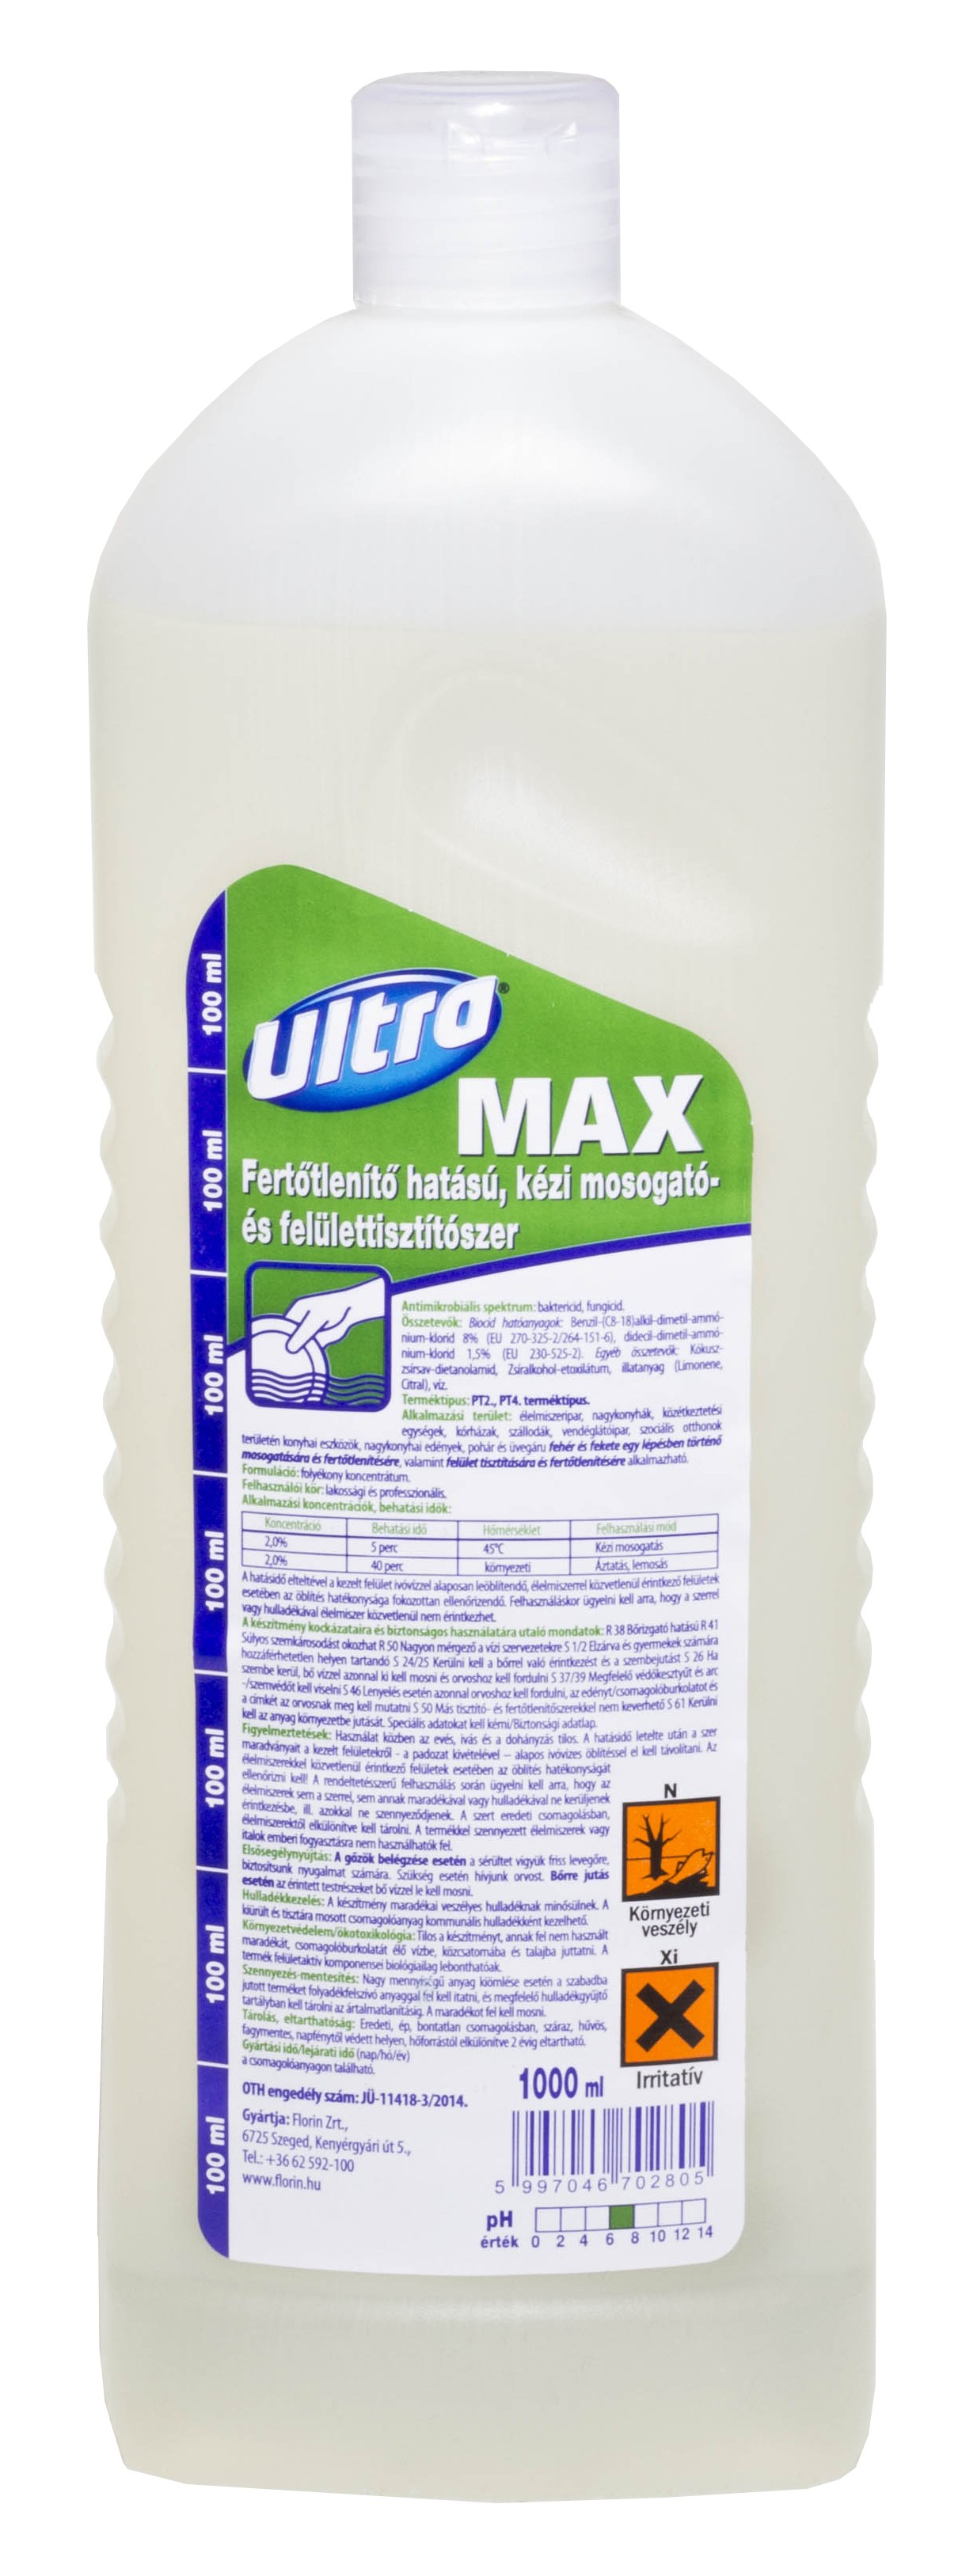 Ultra Max fertőtlenítő hatású, kézi mosogató- és felülettisztítószer 1000 ml